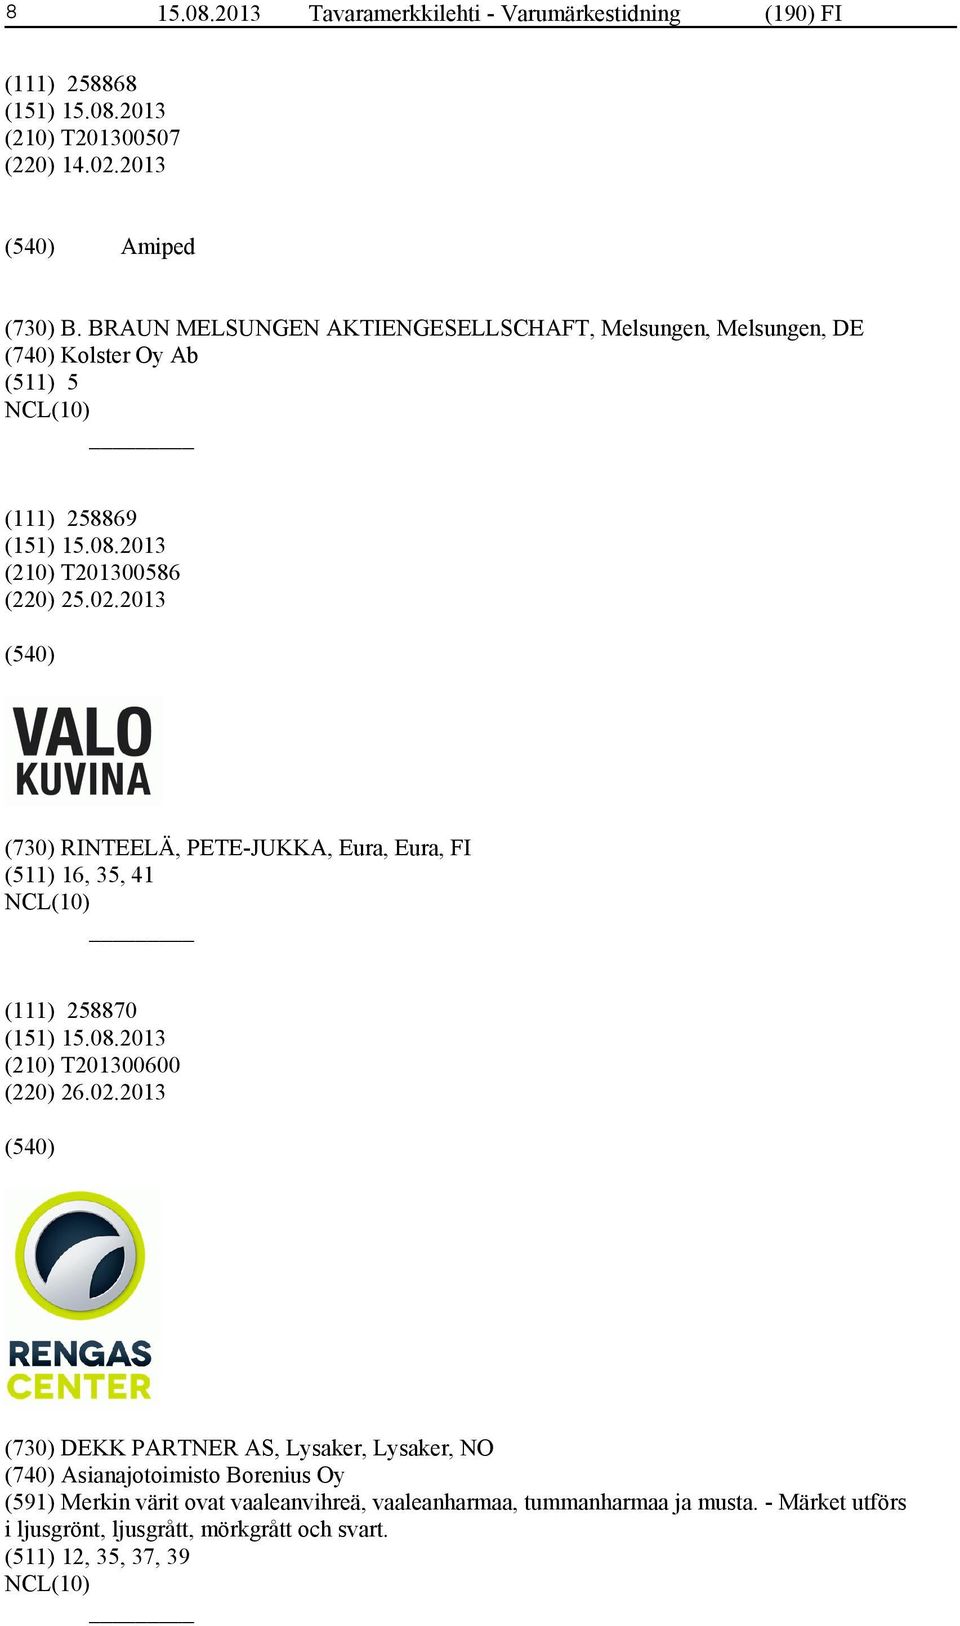 2013 (730) RINTEELÄ, PETE-JUKKA, Eura, Eura, FI (511) 16, 35, 41 (111) 258870 (210) T201300600 (220) 26.02.